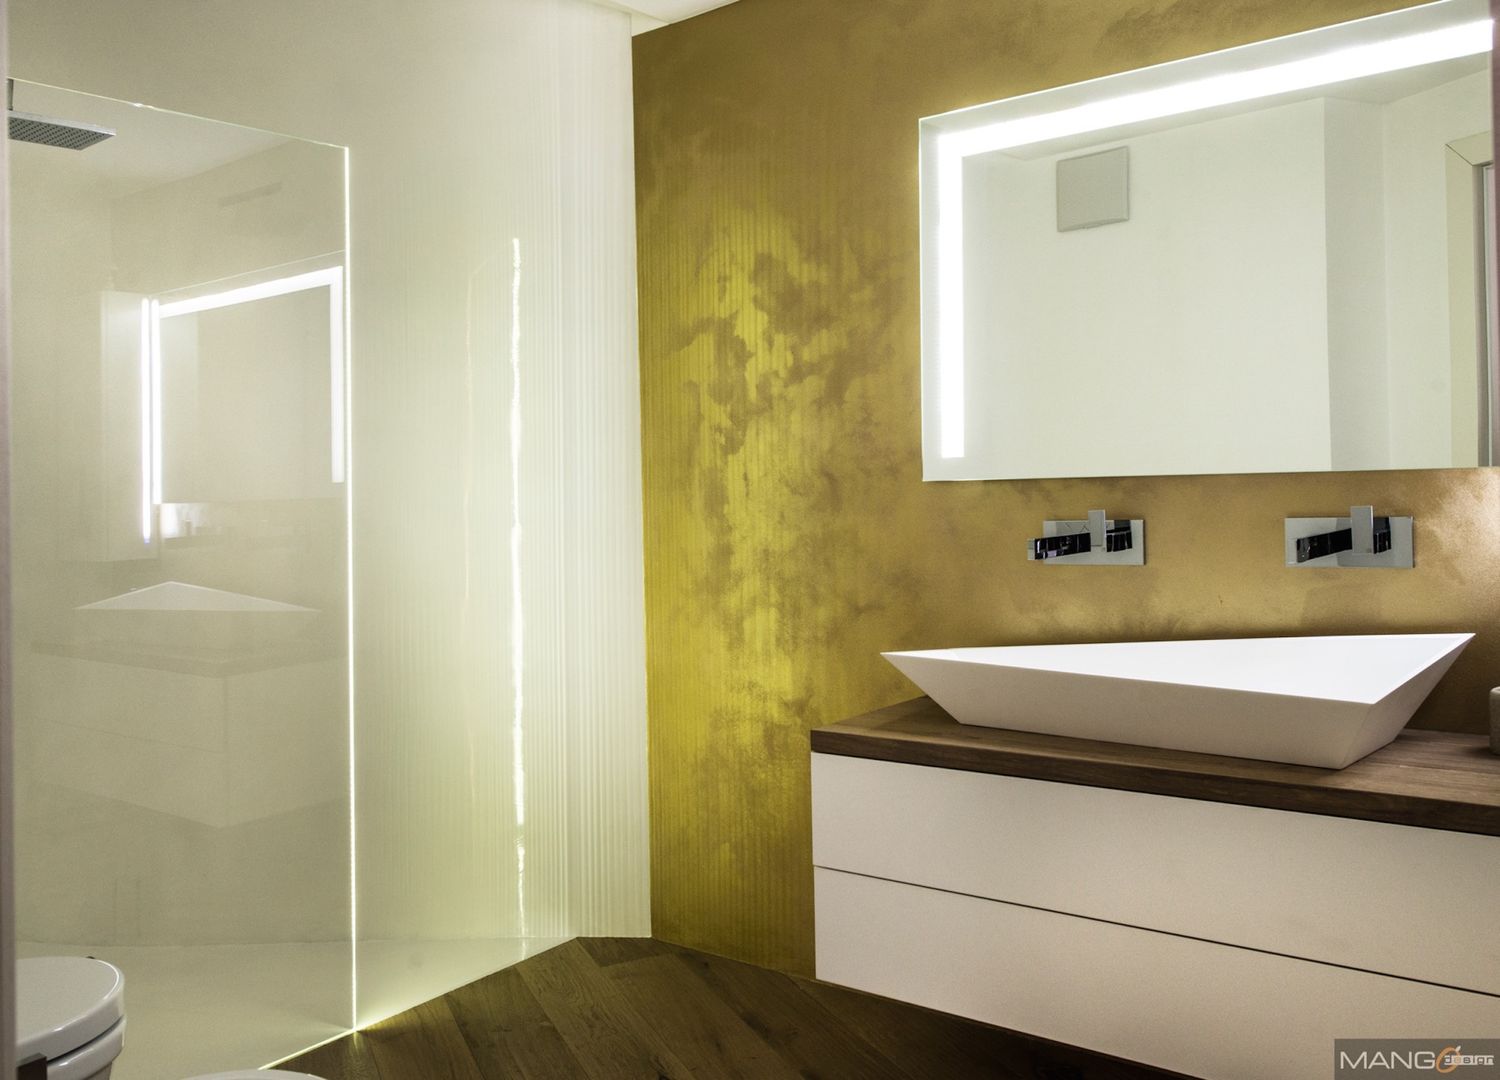 Ristrutturazione di un appartamento con arredi su misura, Mangodesign Mangodesign Modern bathroom